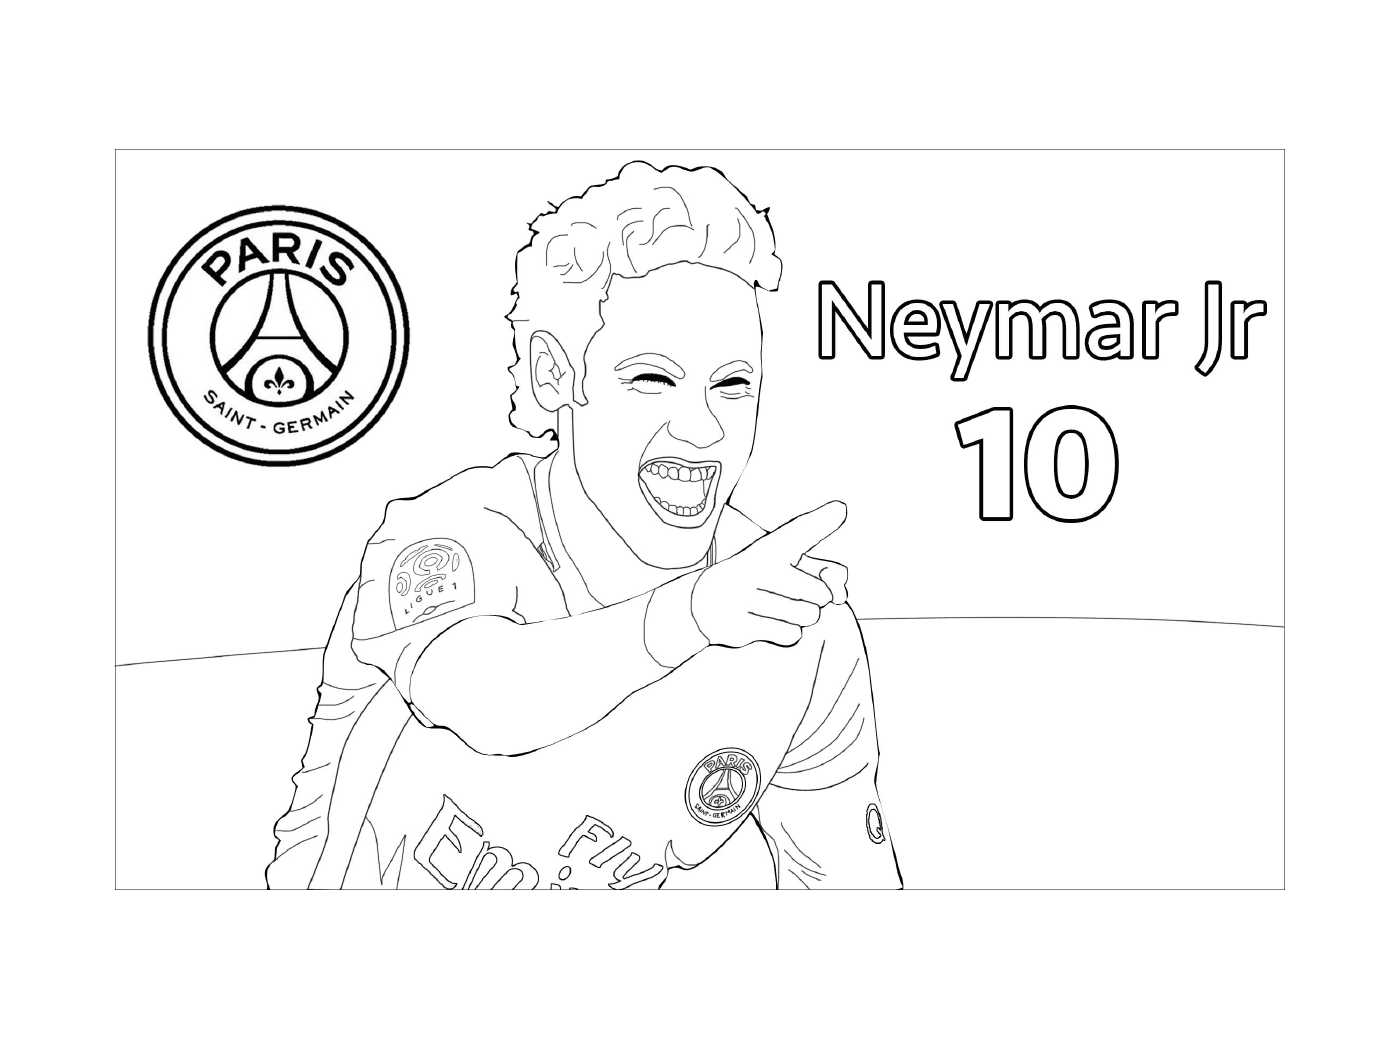   Neymar Jr, joueur de foot au PSG 